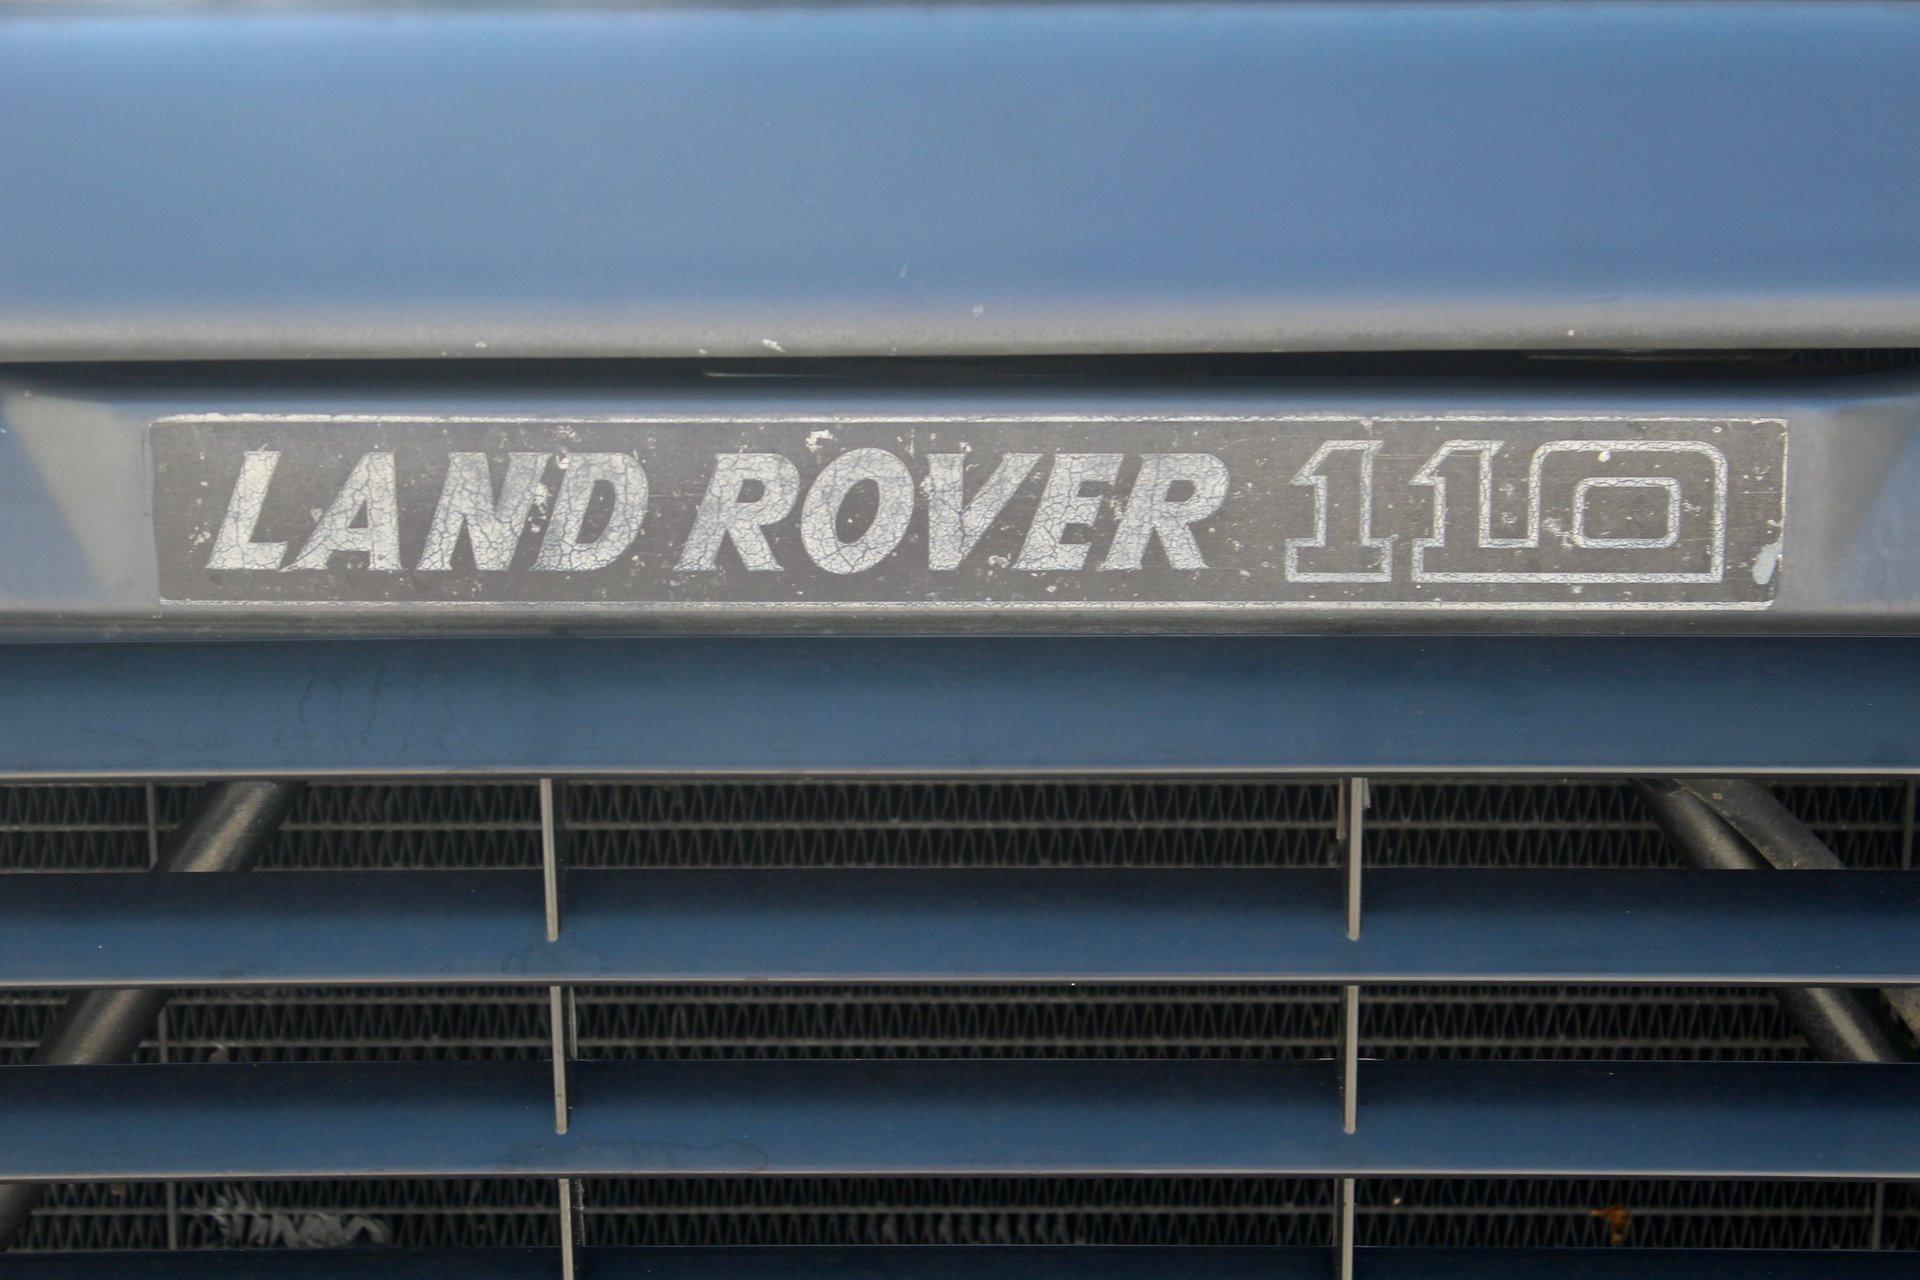 For Sale 1989 Land Rover Defender 110